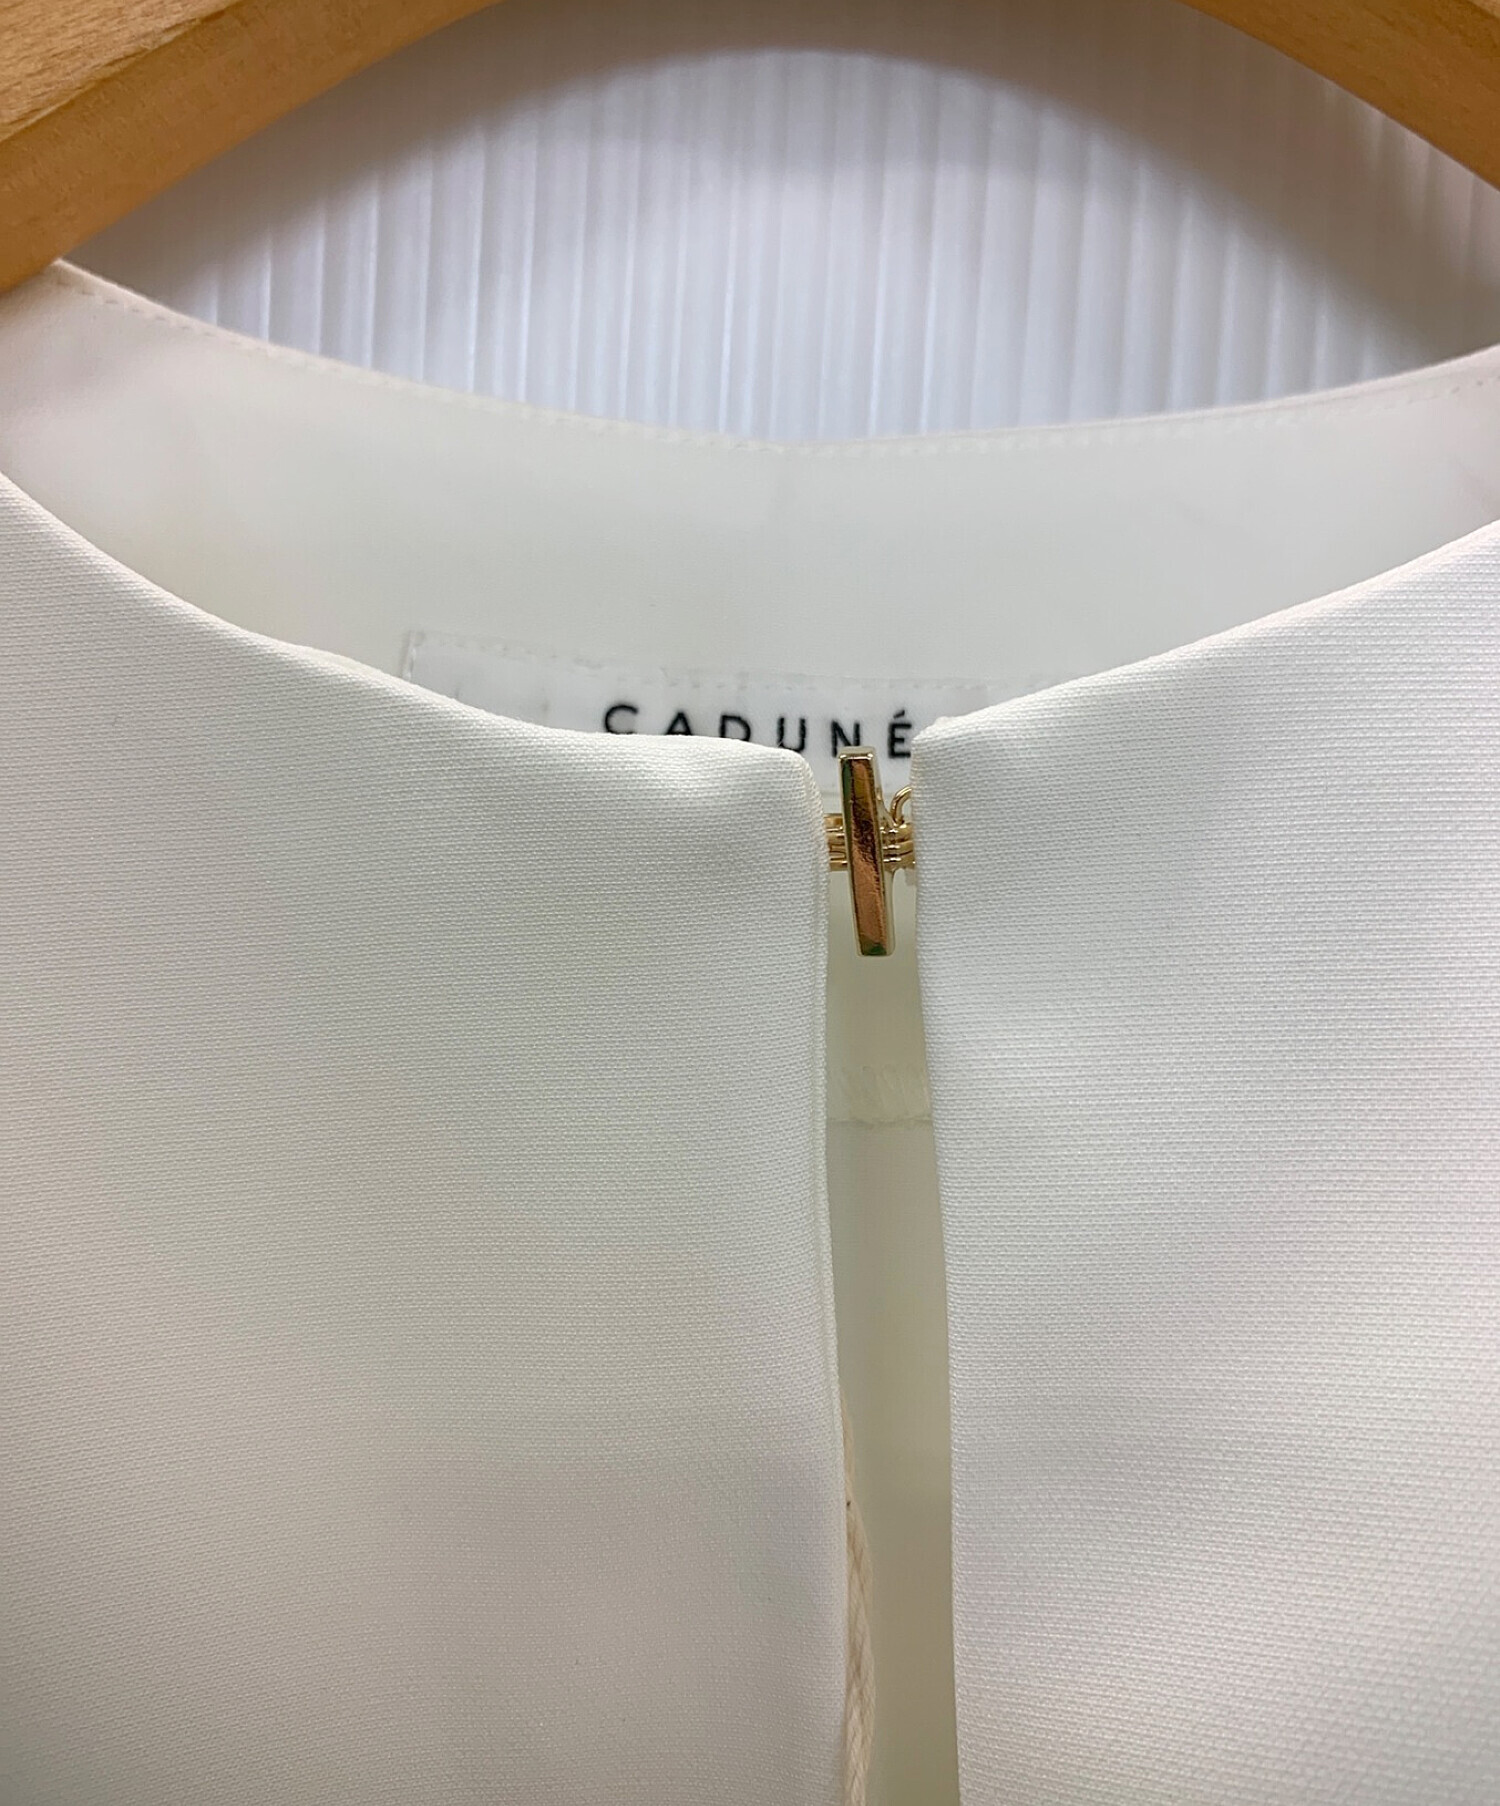 CADUNE (カデュネ) 裾フレアブラウス ホワイト サイズ:38